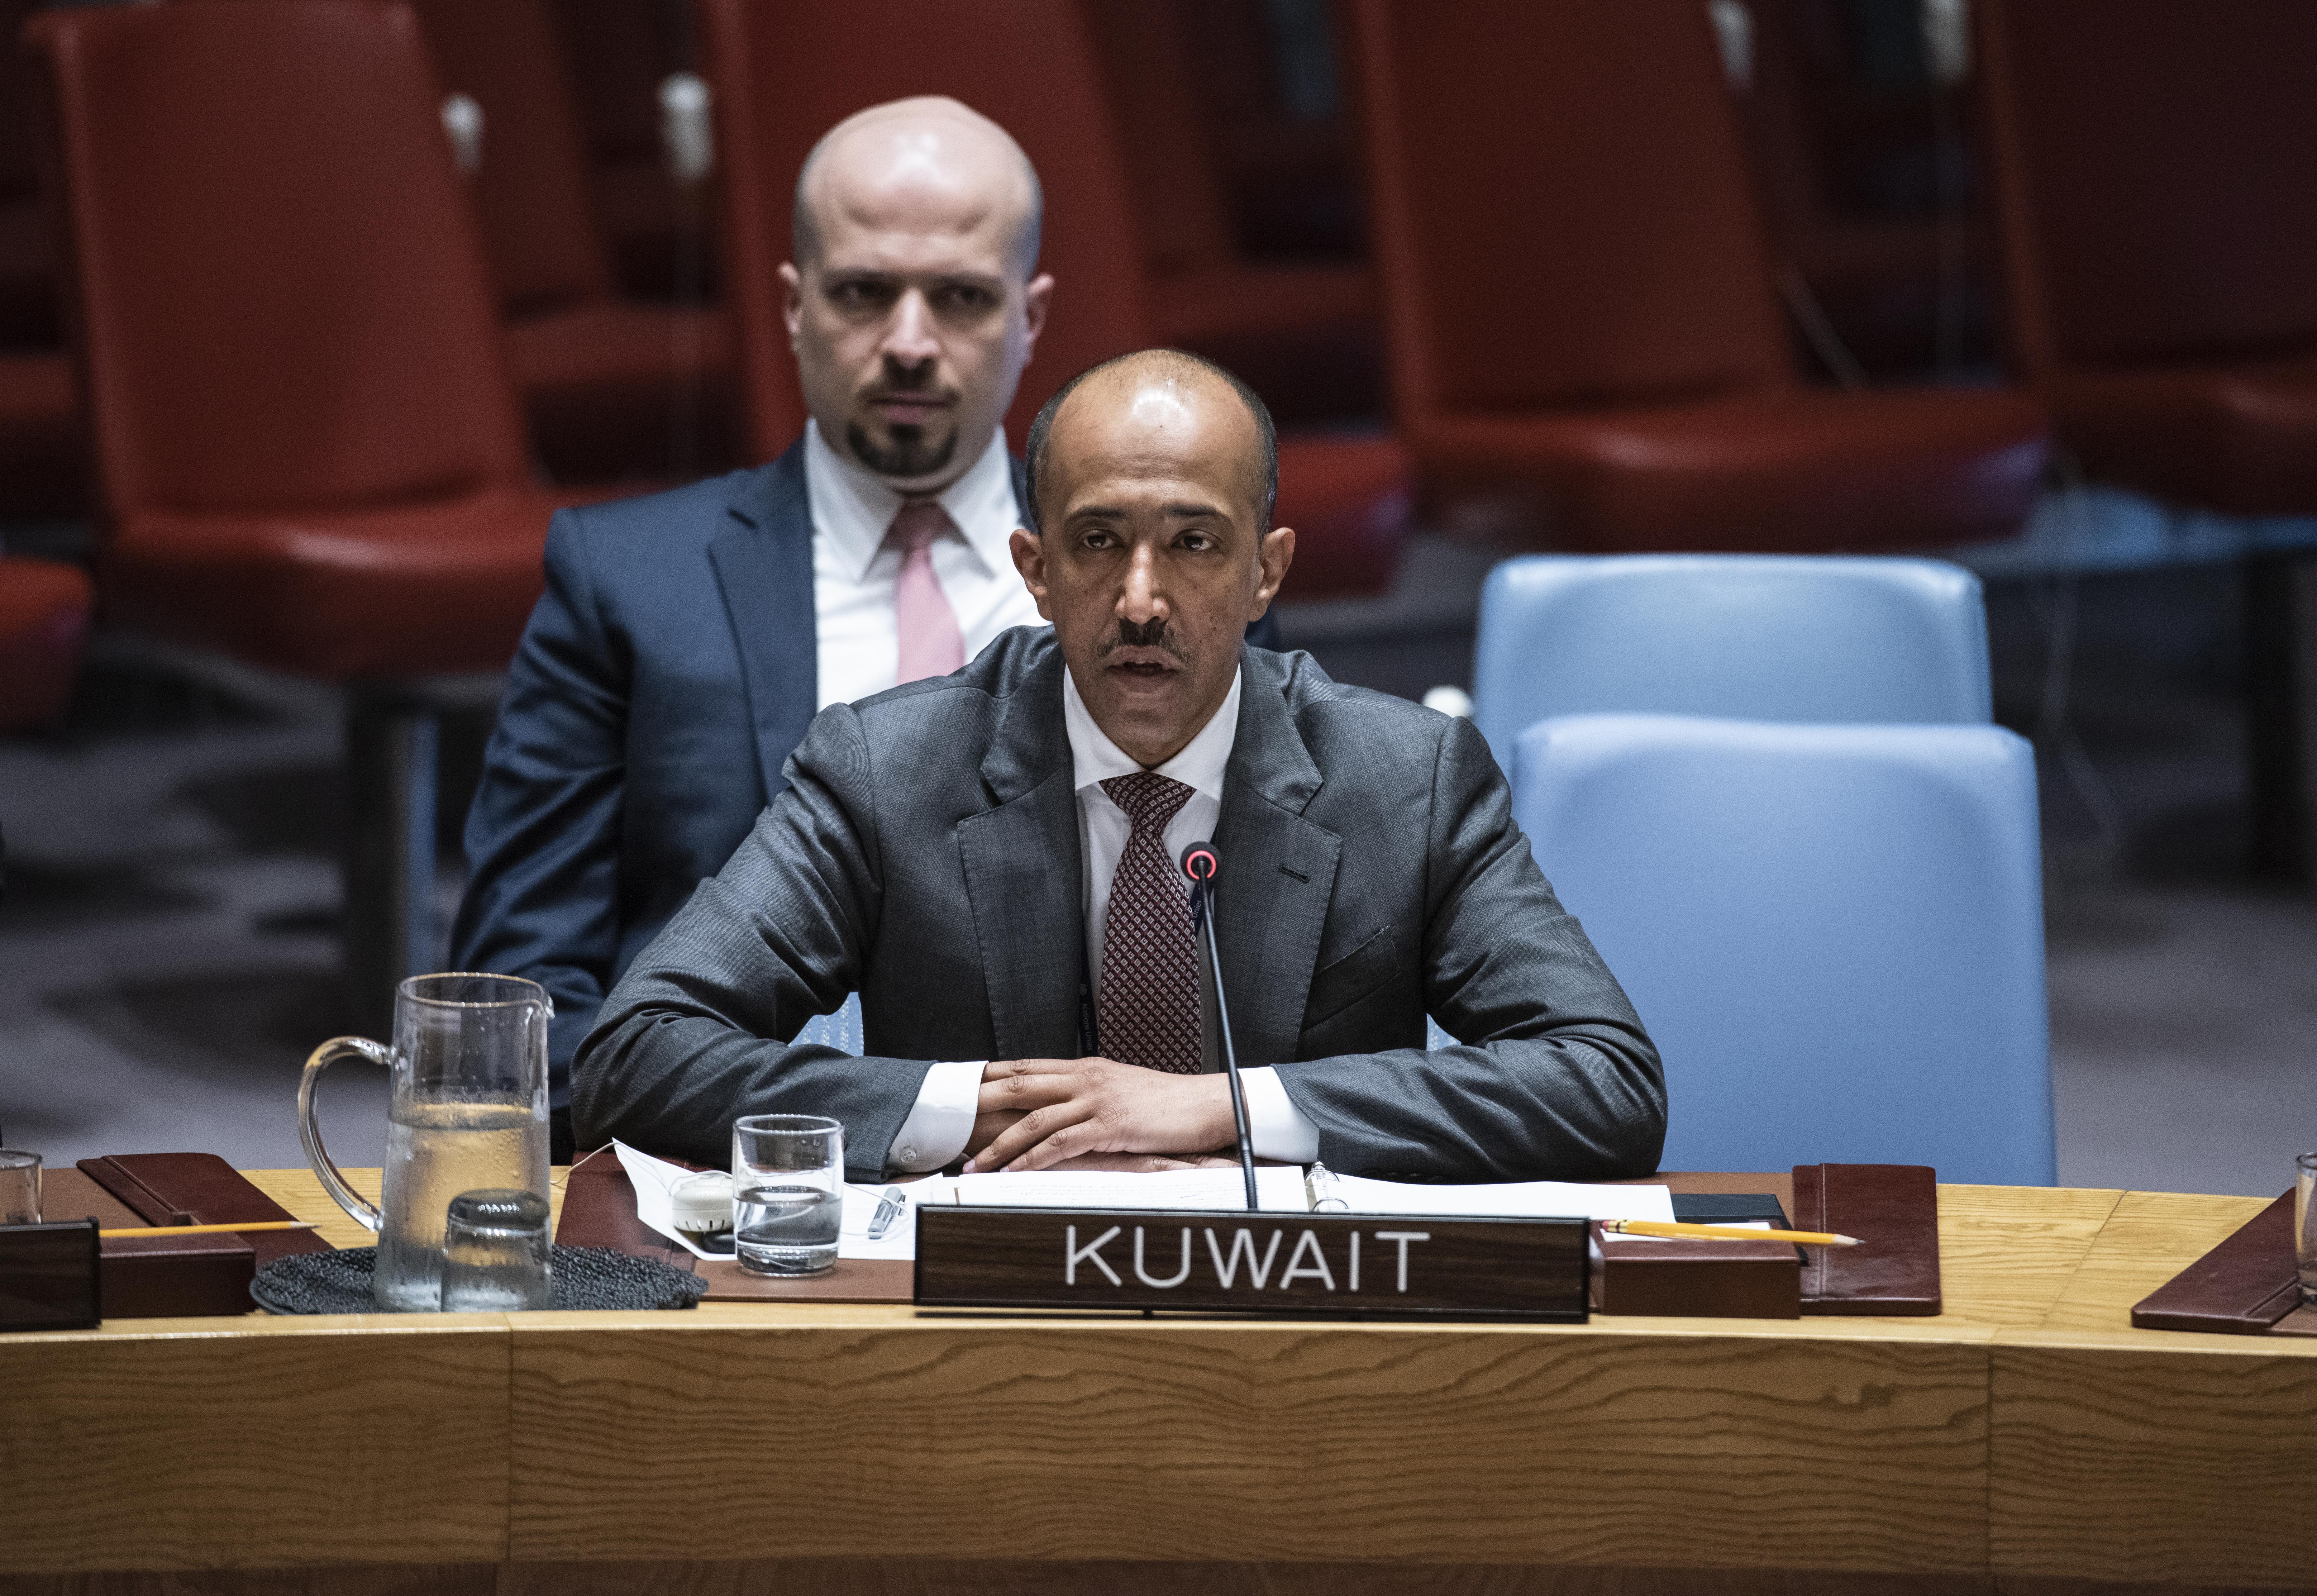 Kuwait's deputy permanent representative at the UN Bader Al-Munaikh